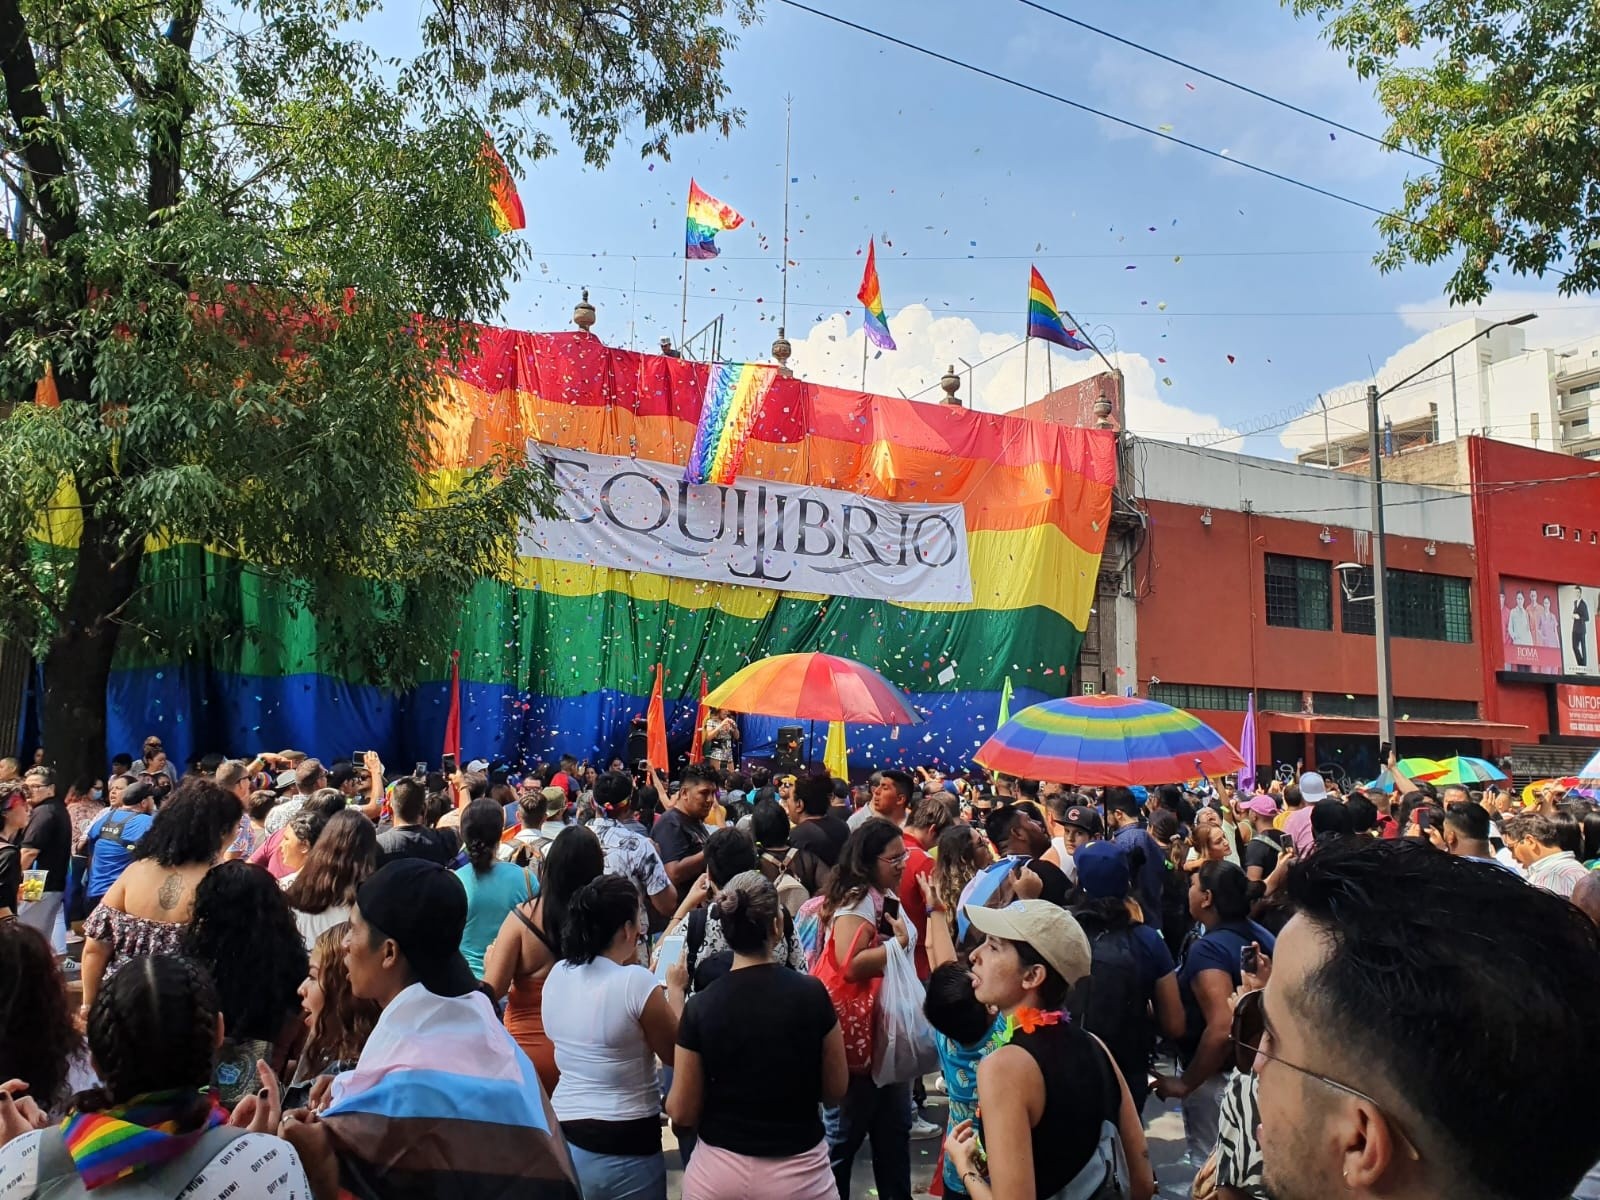 Marcha gay Guadalajara Pride 2022 Con miles, arranca la Marcha del